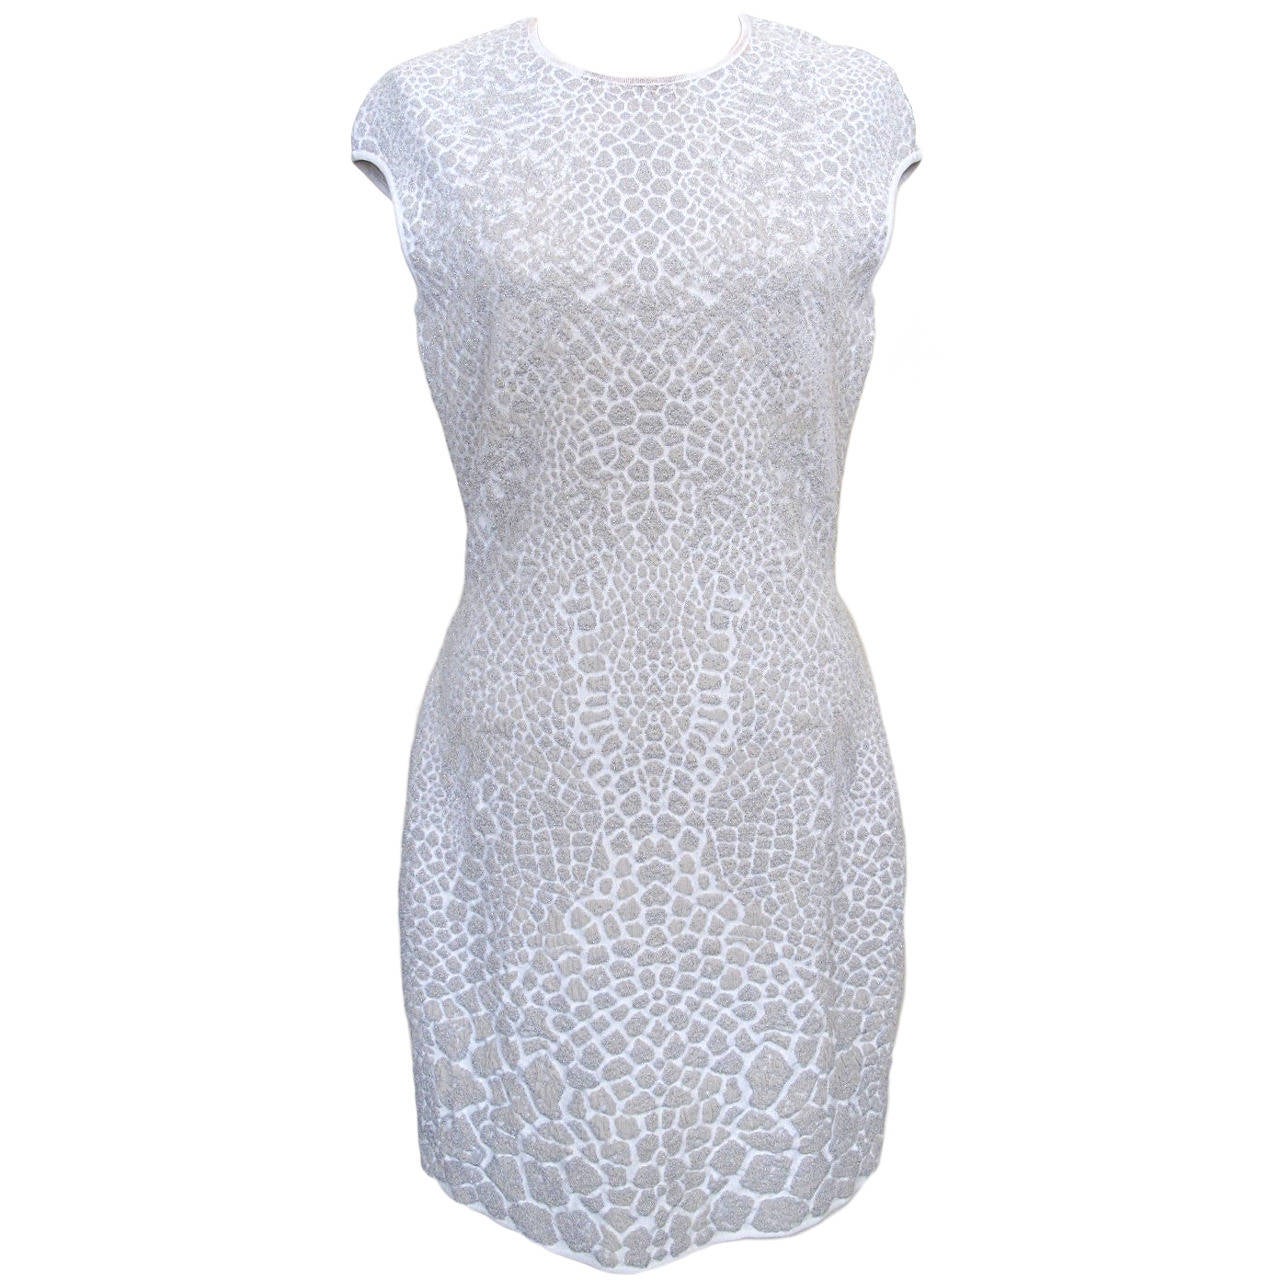 New Alexander McQueen Snow Cheetah Dress For Sale